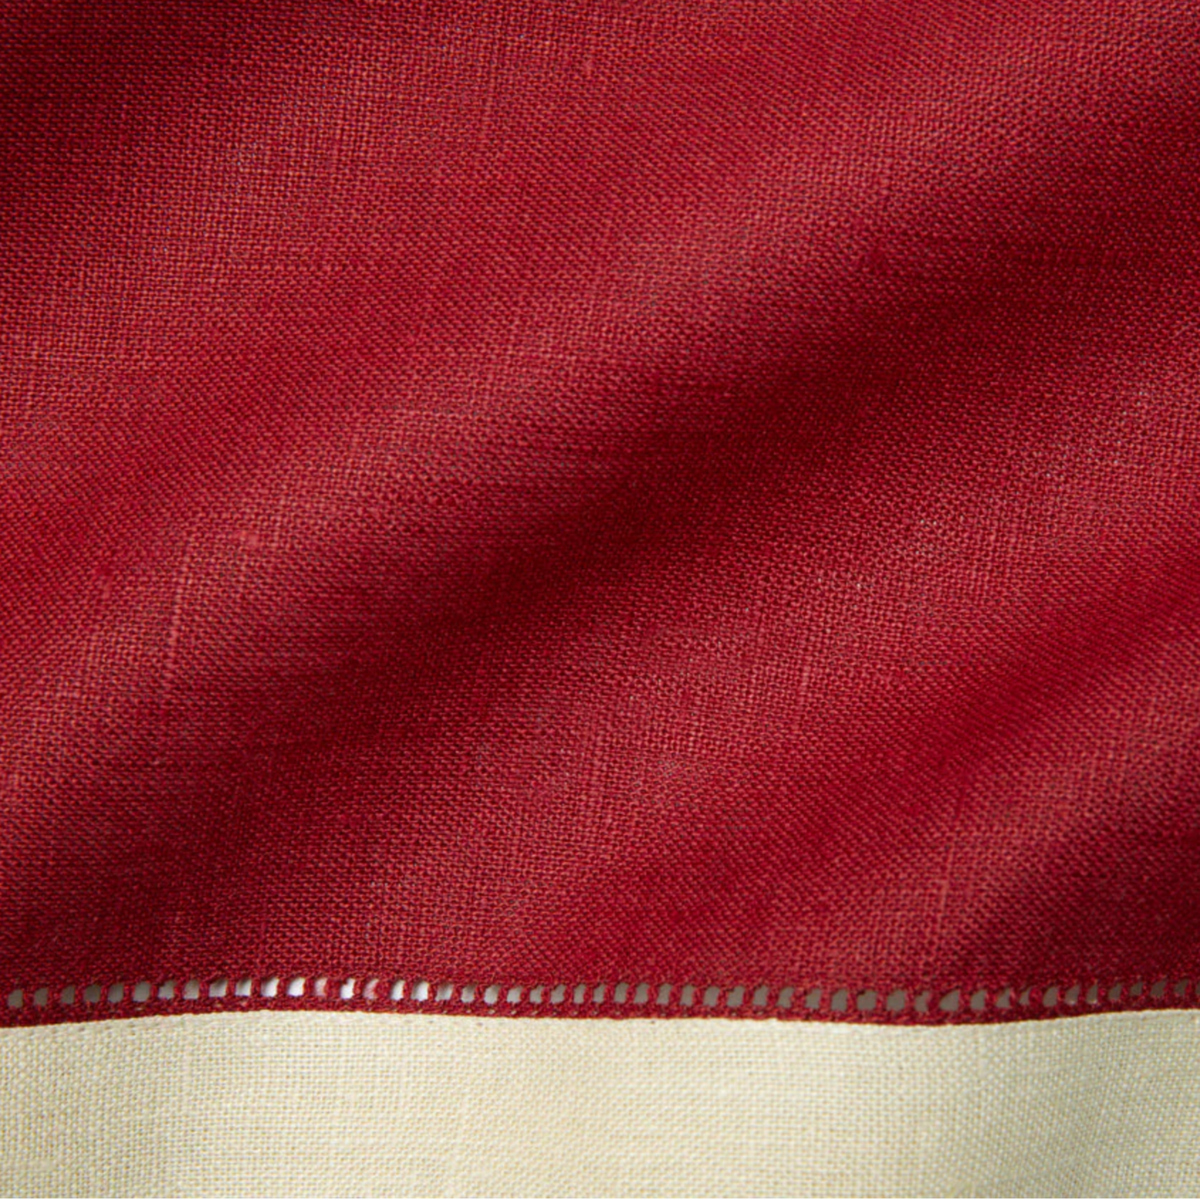 Closeup of Sferra Roma Napkin Fabric in Cinnanar and Stone Color